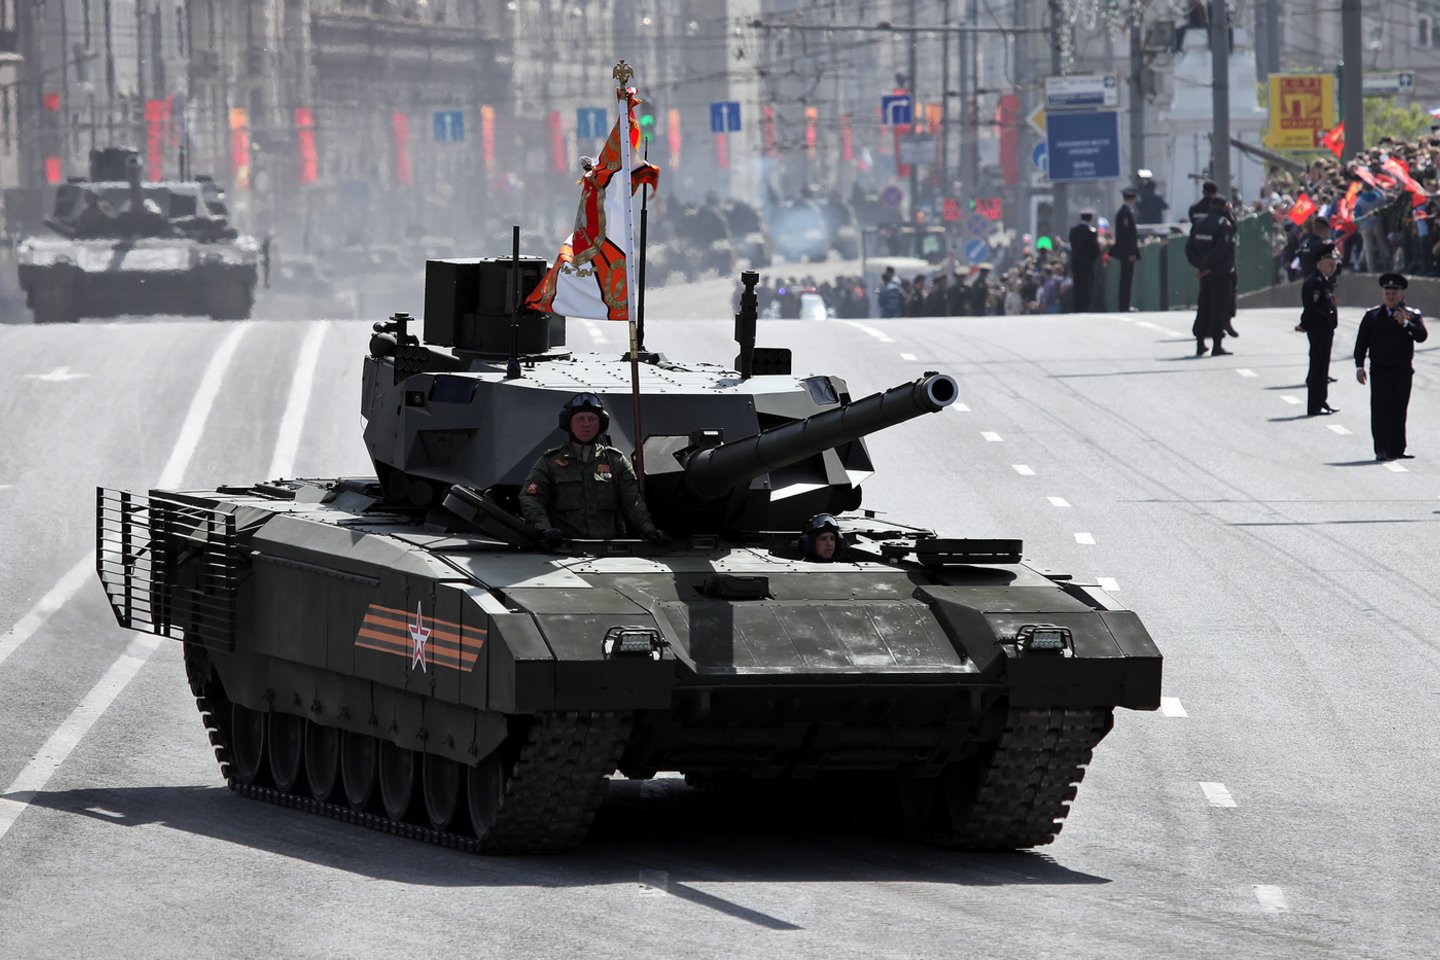  Rusija nori, kad kitos šalys pirktų jos pažangųjį tanką „T-14 Armata“ – tačiau pati Rusija neatrodo labai susidomėjusi naujuoju kūriniu.<br> Wikimedia commons.